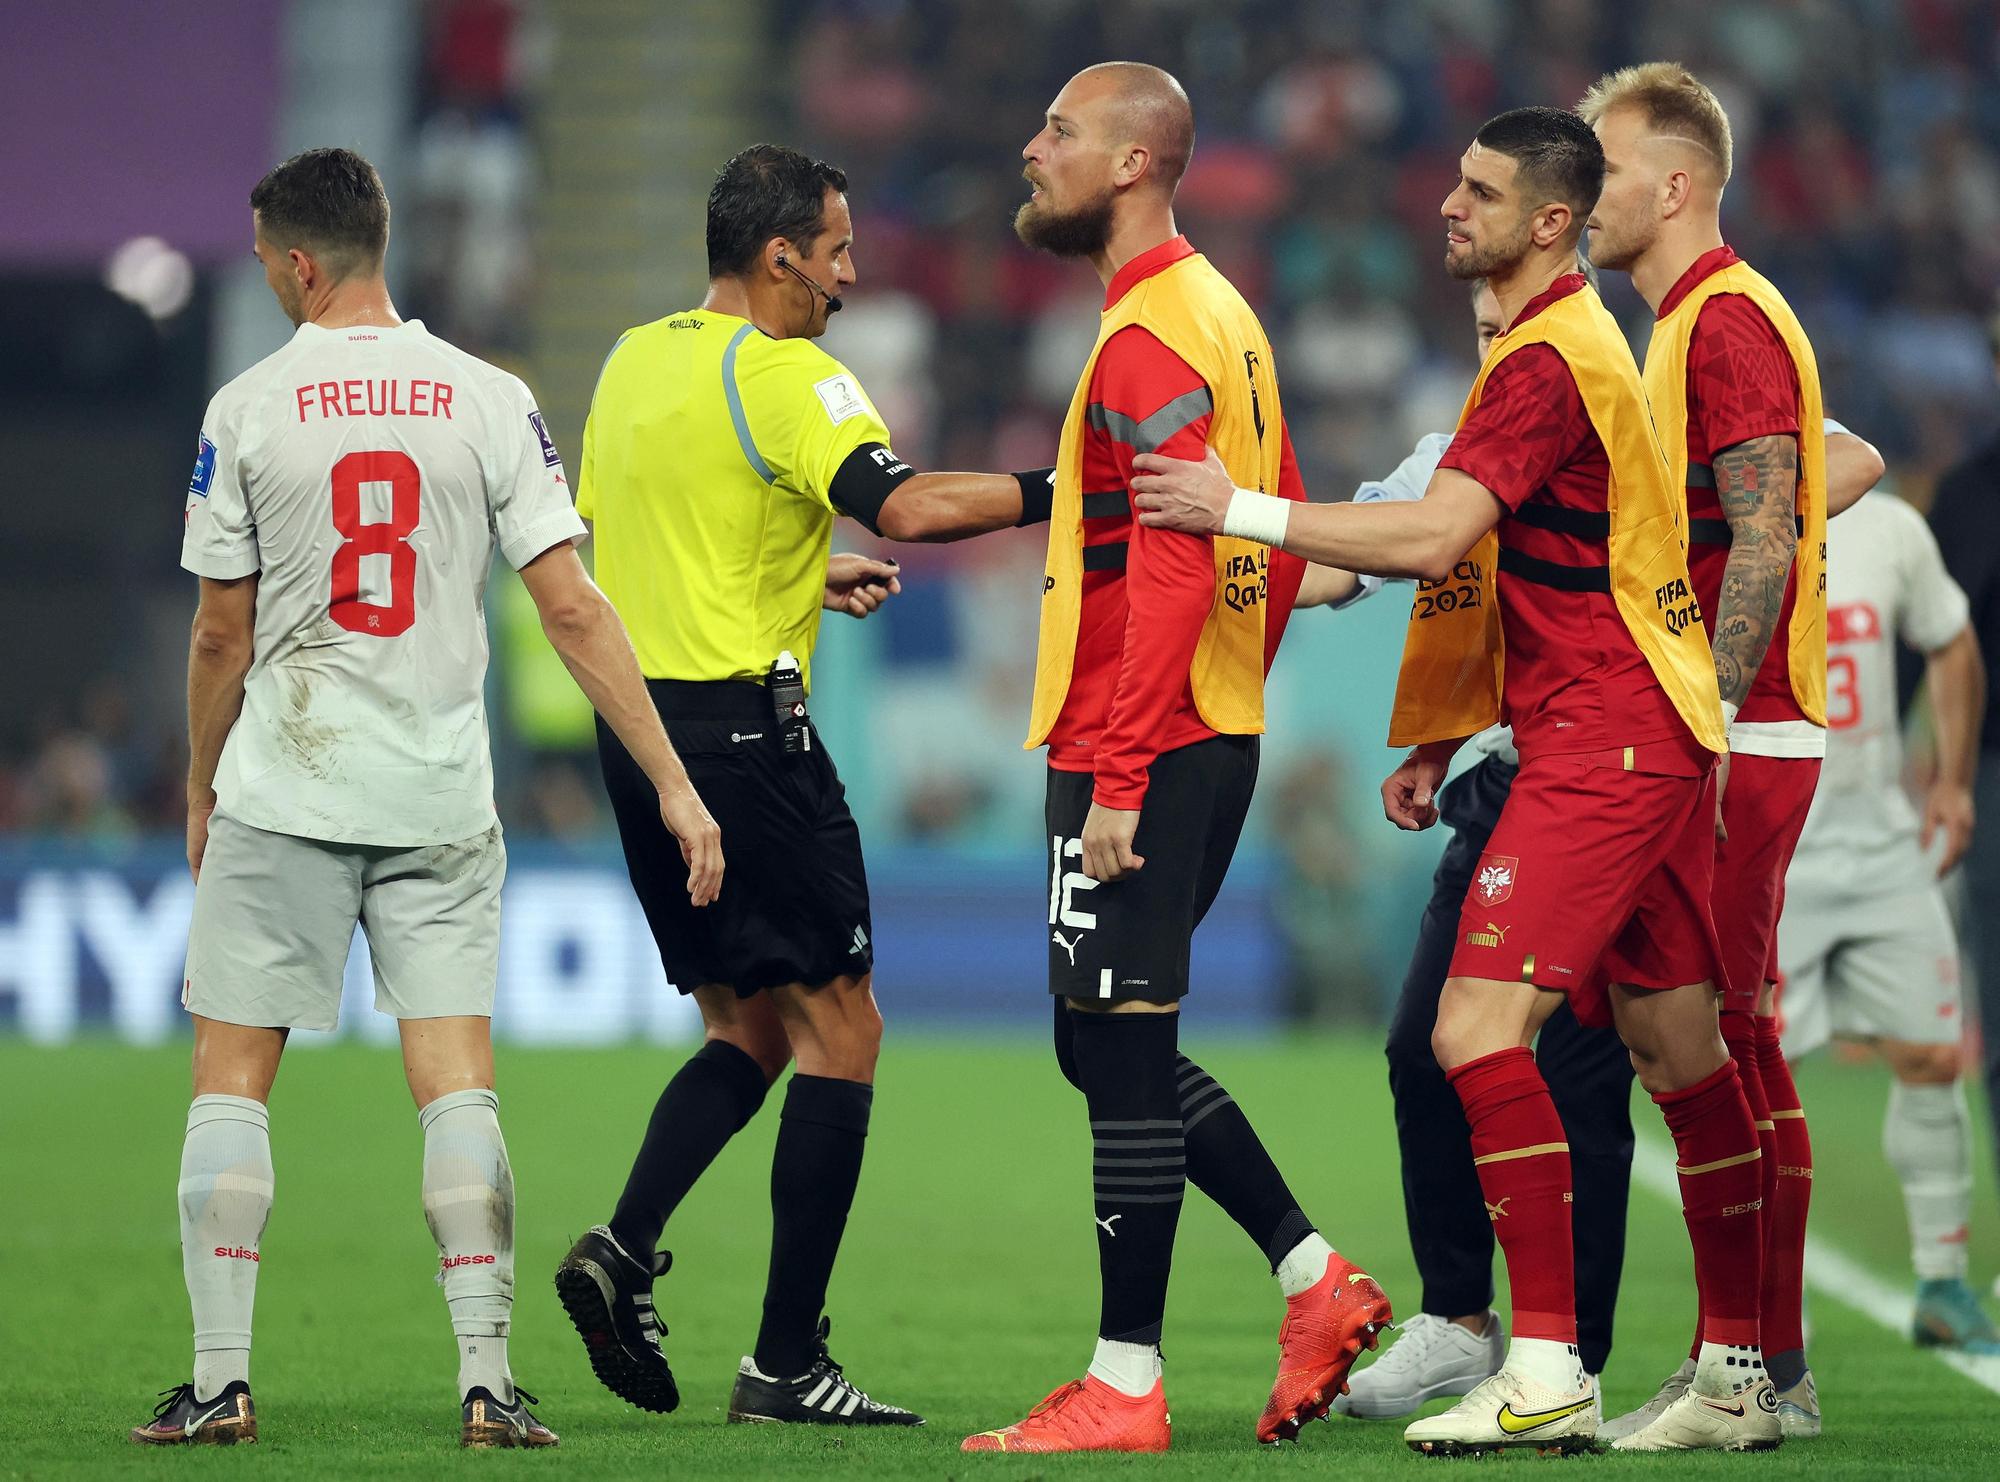 Rajkovic es agarrado por un compañero mientras discute con un rival